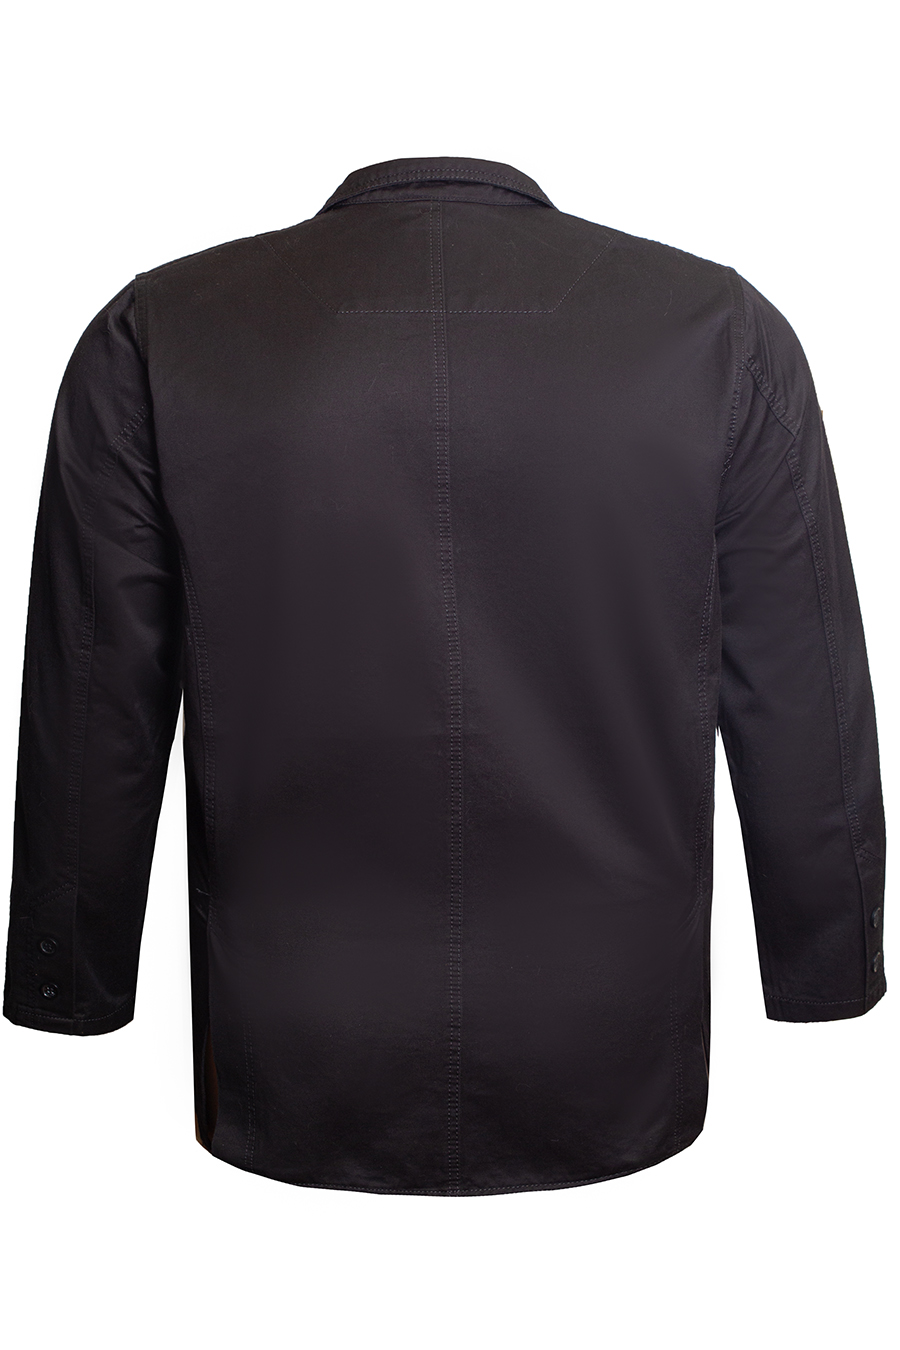 Пиджак 4031 Dekons Gabardin black большого размера